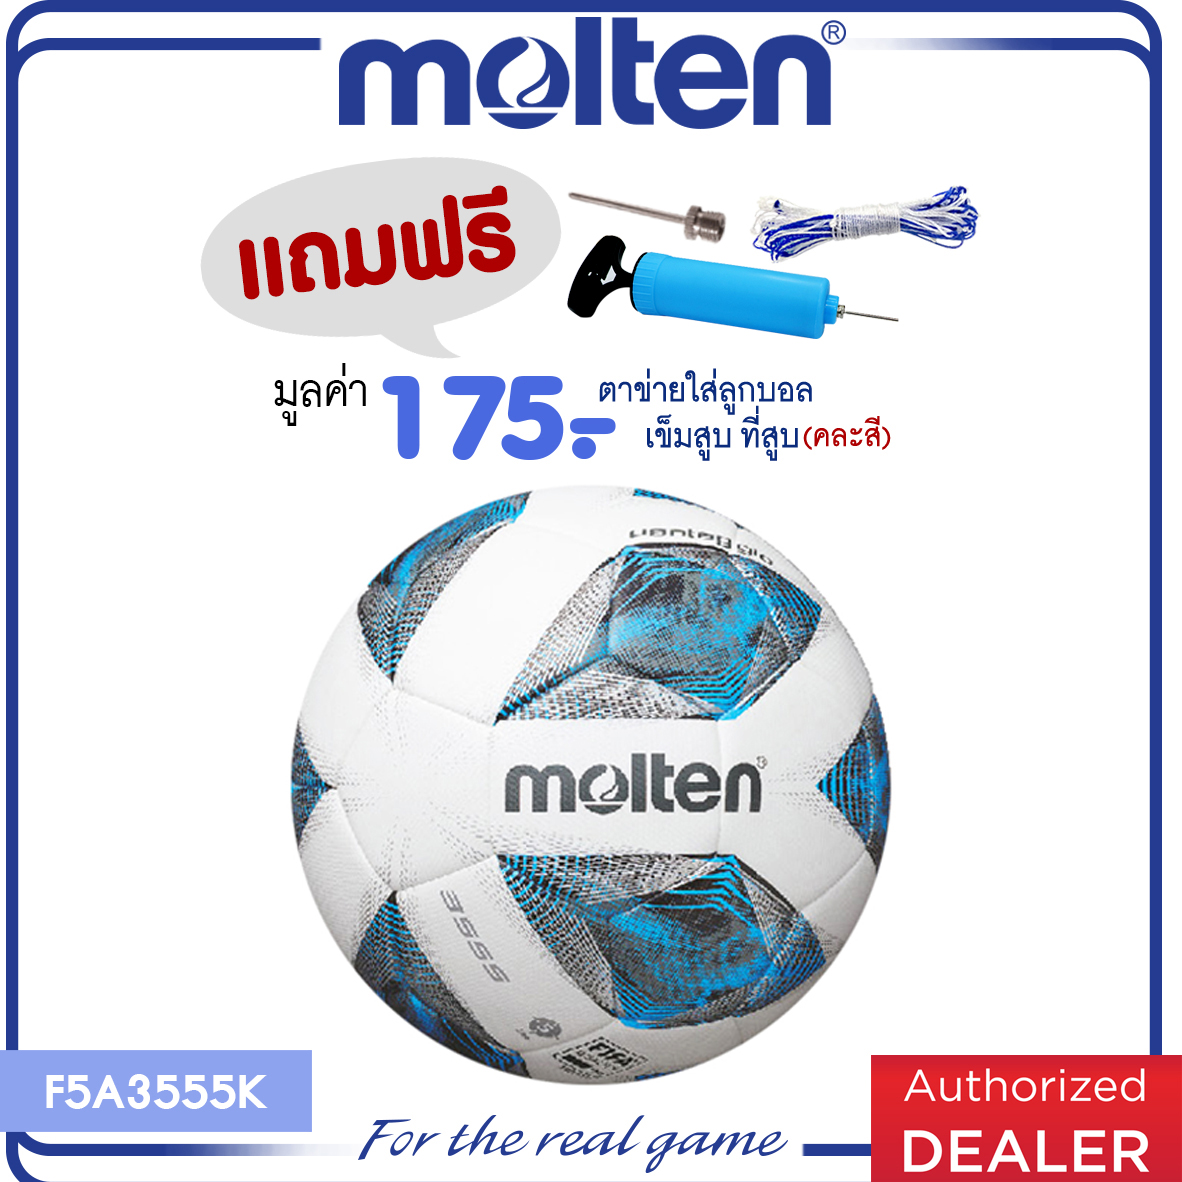 MOLTEN ลูกฟุตบอลหนังเย็บ ลูกฟุตบอลเบอร์ 5 FootballAcentecPUpk F5A3555K FIFA PRO (1200) (แถมฟรี เข็มสูบ + ตาข่าย + ที่สูบ)